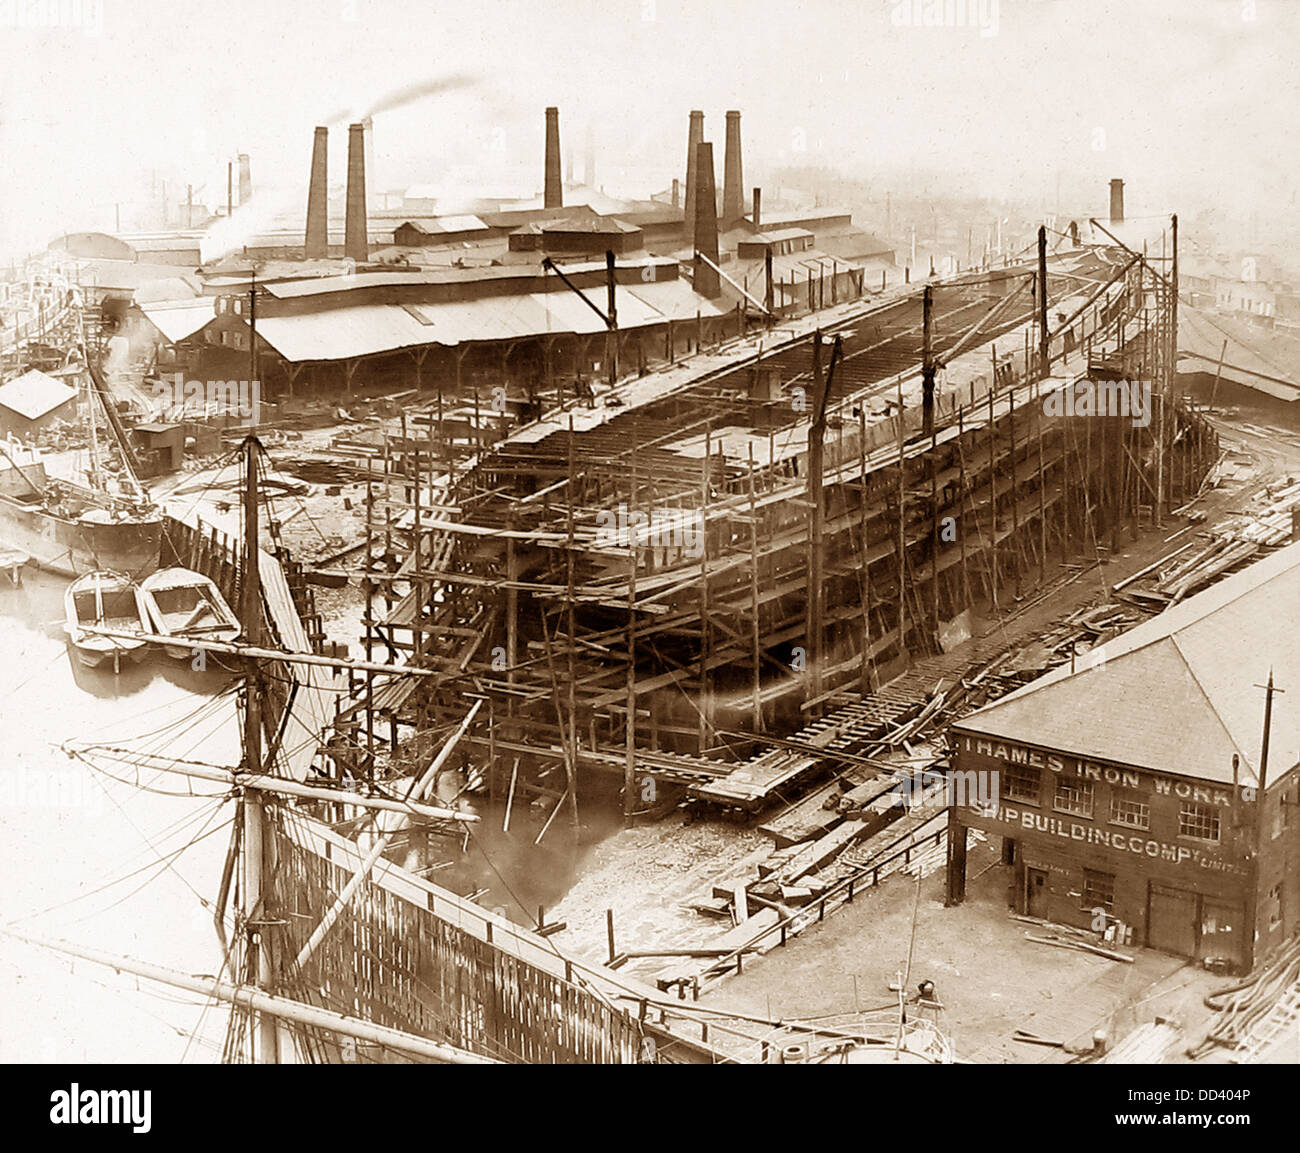 Thames Ironworks et Shipbuilding Company - construire un navire de l'époque victorienne Banque D'Images